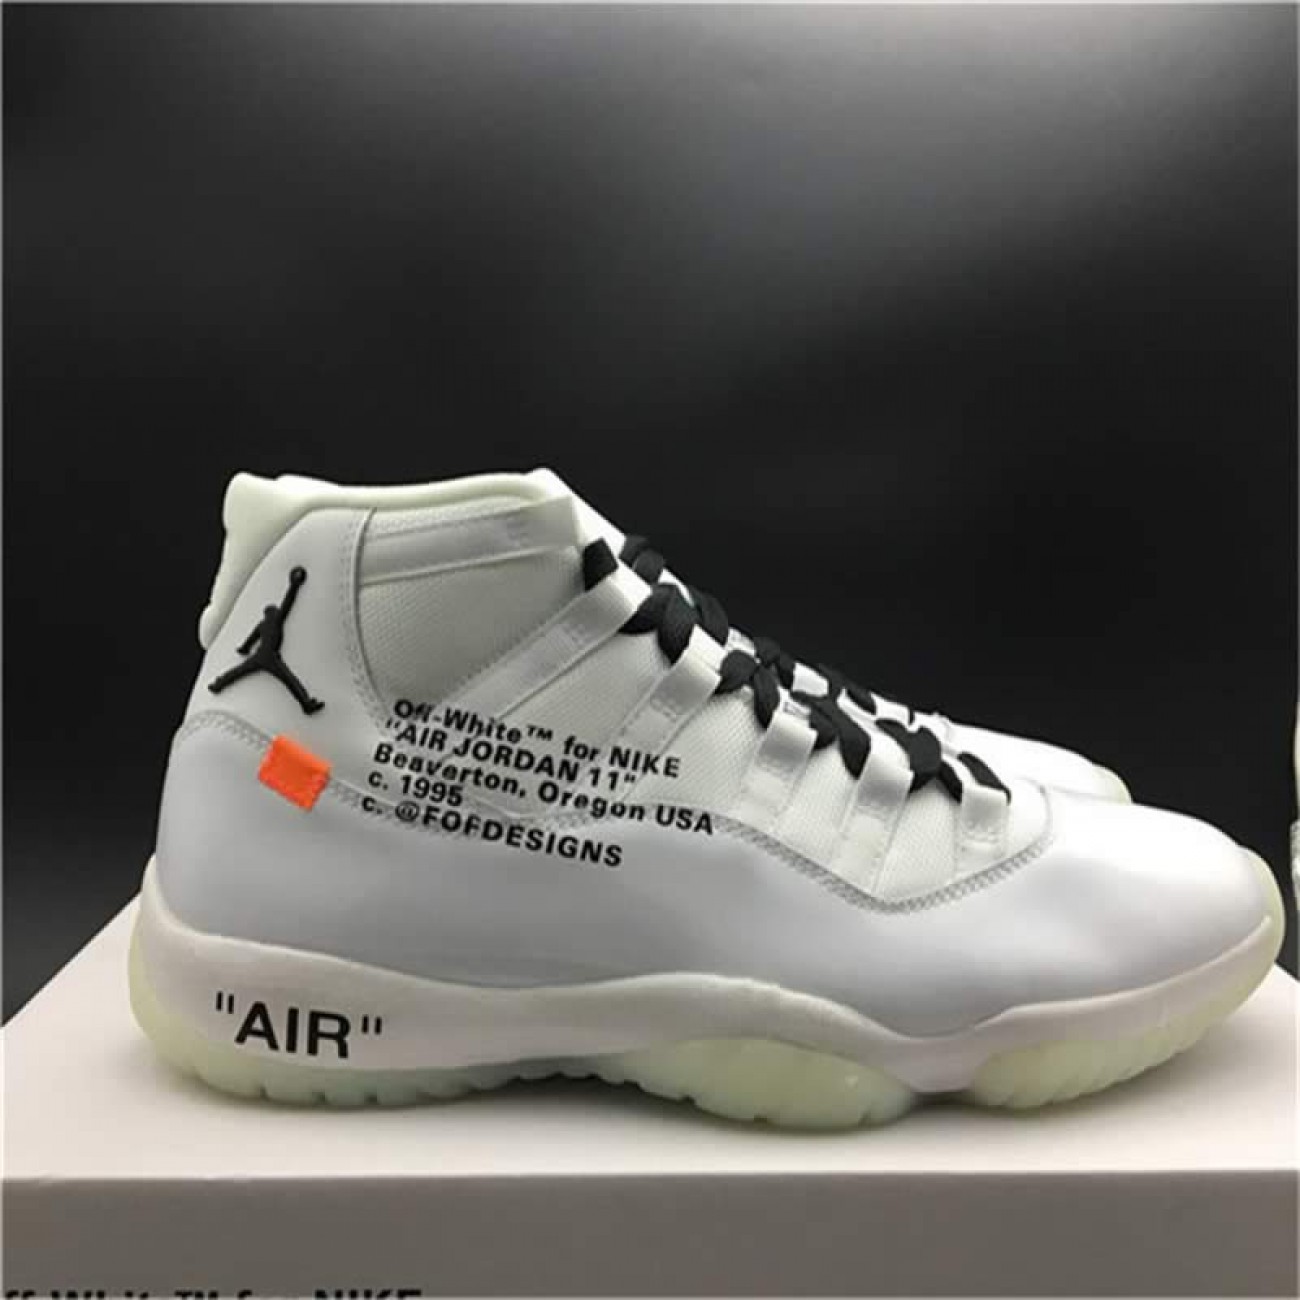 Off-White x Air Jordan 11 AJ11 All White Customize Shoes Jordans